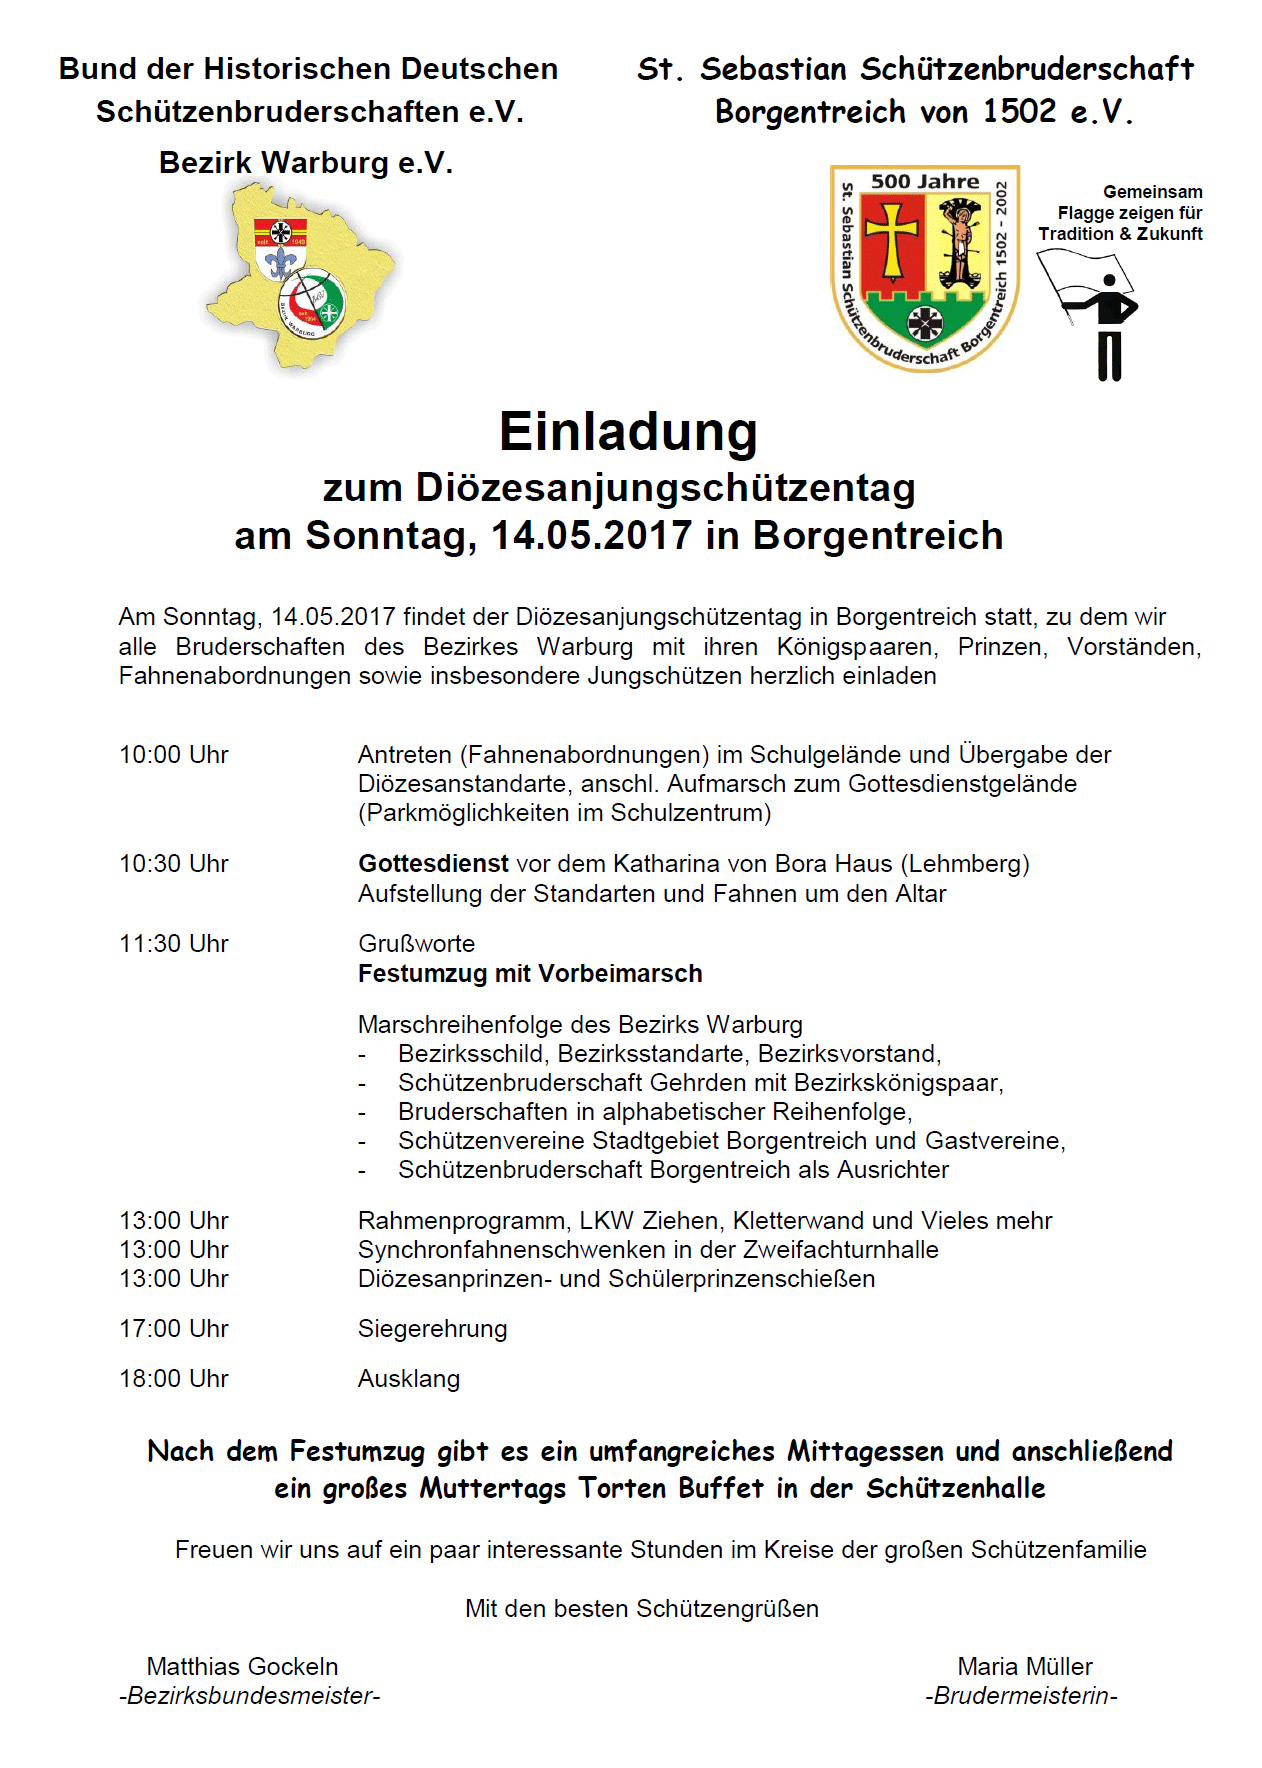 Diözesanjungschützentag in Borgentreich